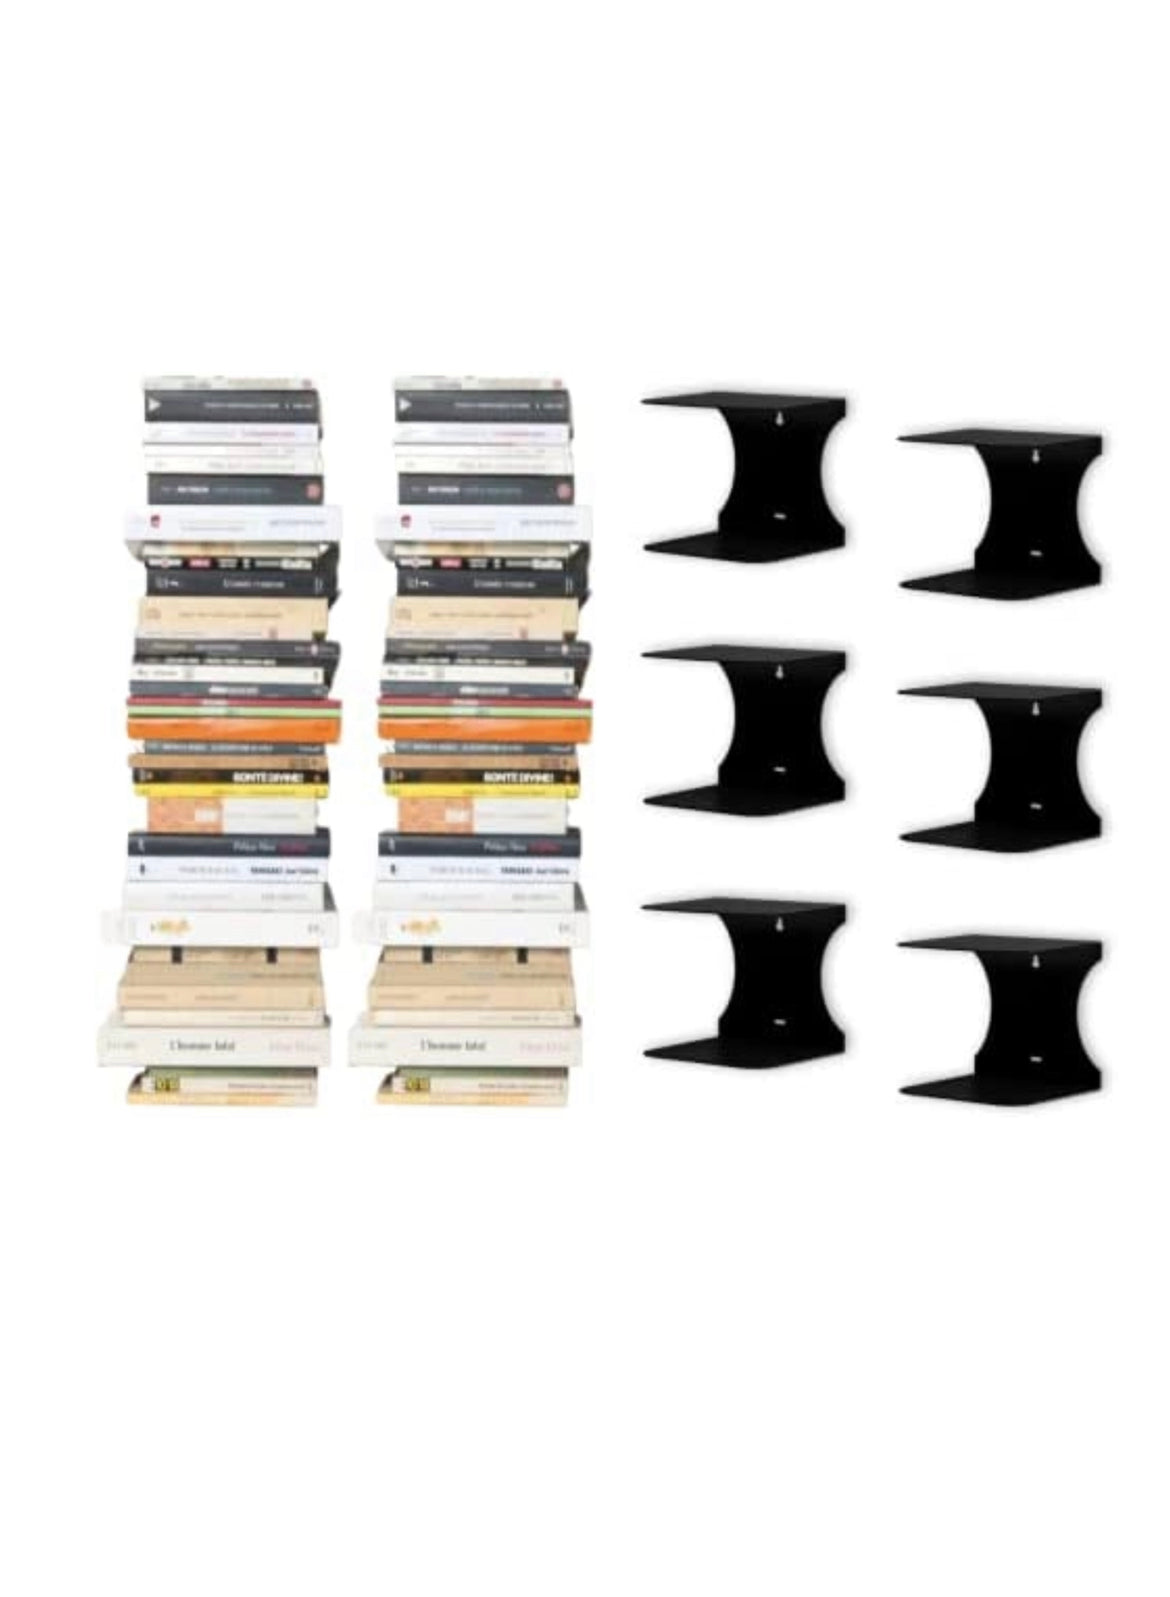 Mensole libreria a scomparsa invisibili,più Grandi colore: Nero, per mettere i libri più Grandi in pila  (6)